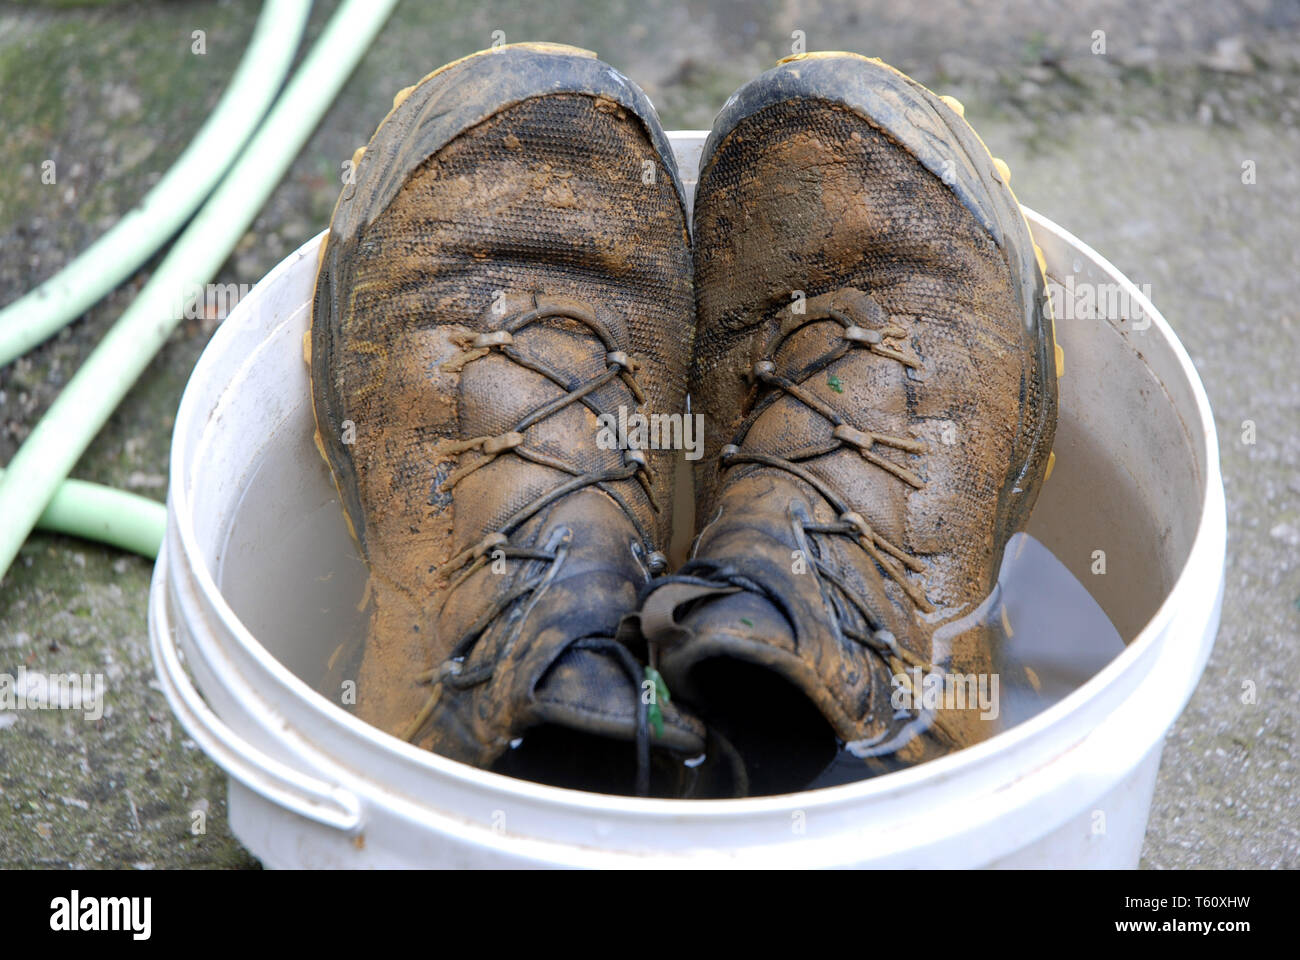 Schuhe der ultramarathonläufer Giuseppe De Rosa am Ende der letzten Enterprise in einen Eimer voll Wasser der Schlamm aus dem Vietnam zu entfernen beendet Stockfoto